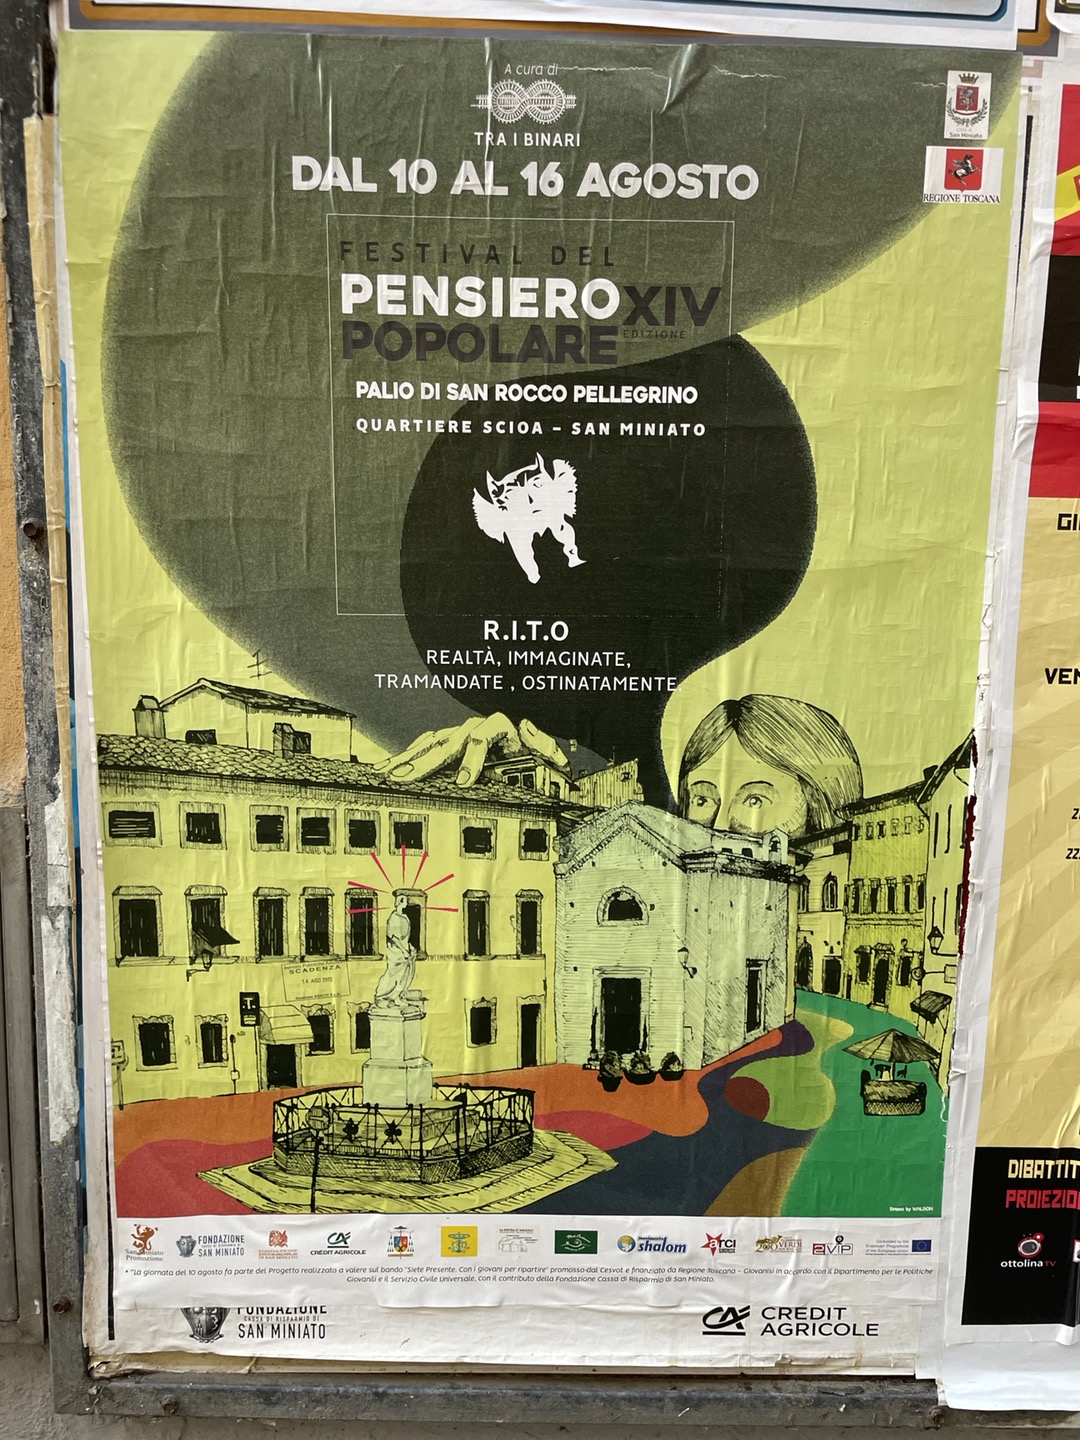 < 페스티벌 델 펜시에로 포폴라레 포스터 - 출처: 통신원 촬영 > 